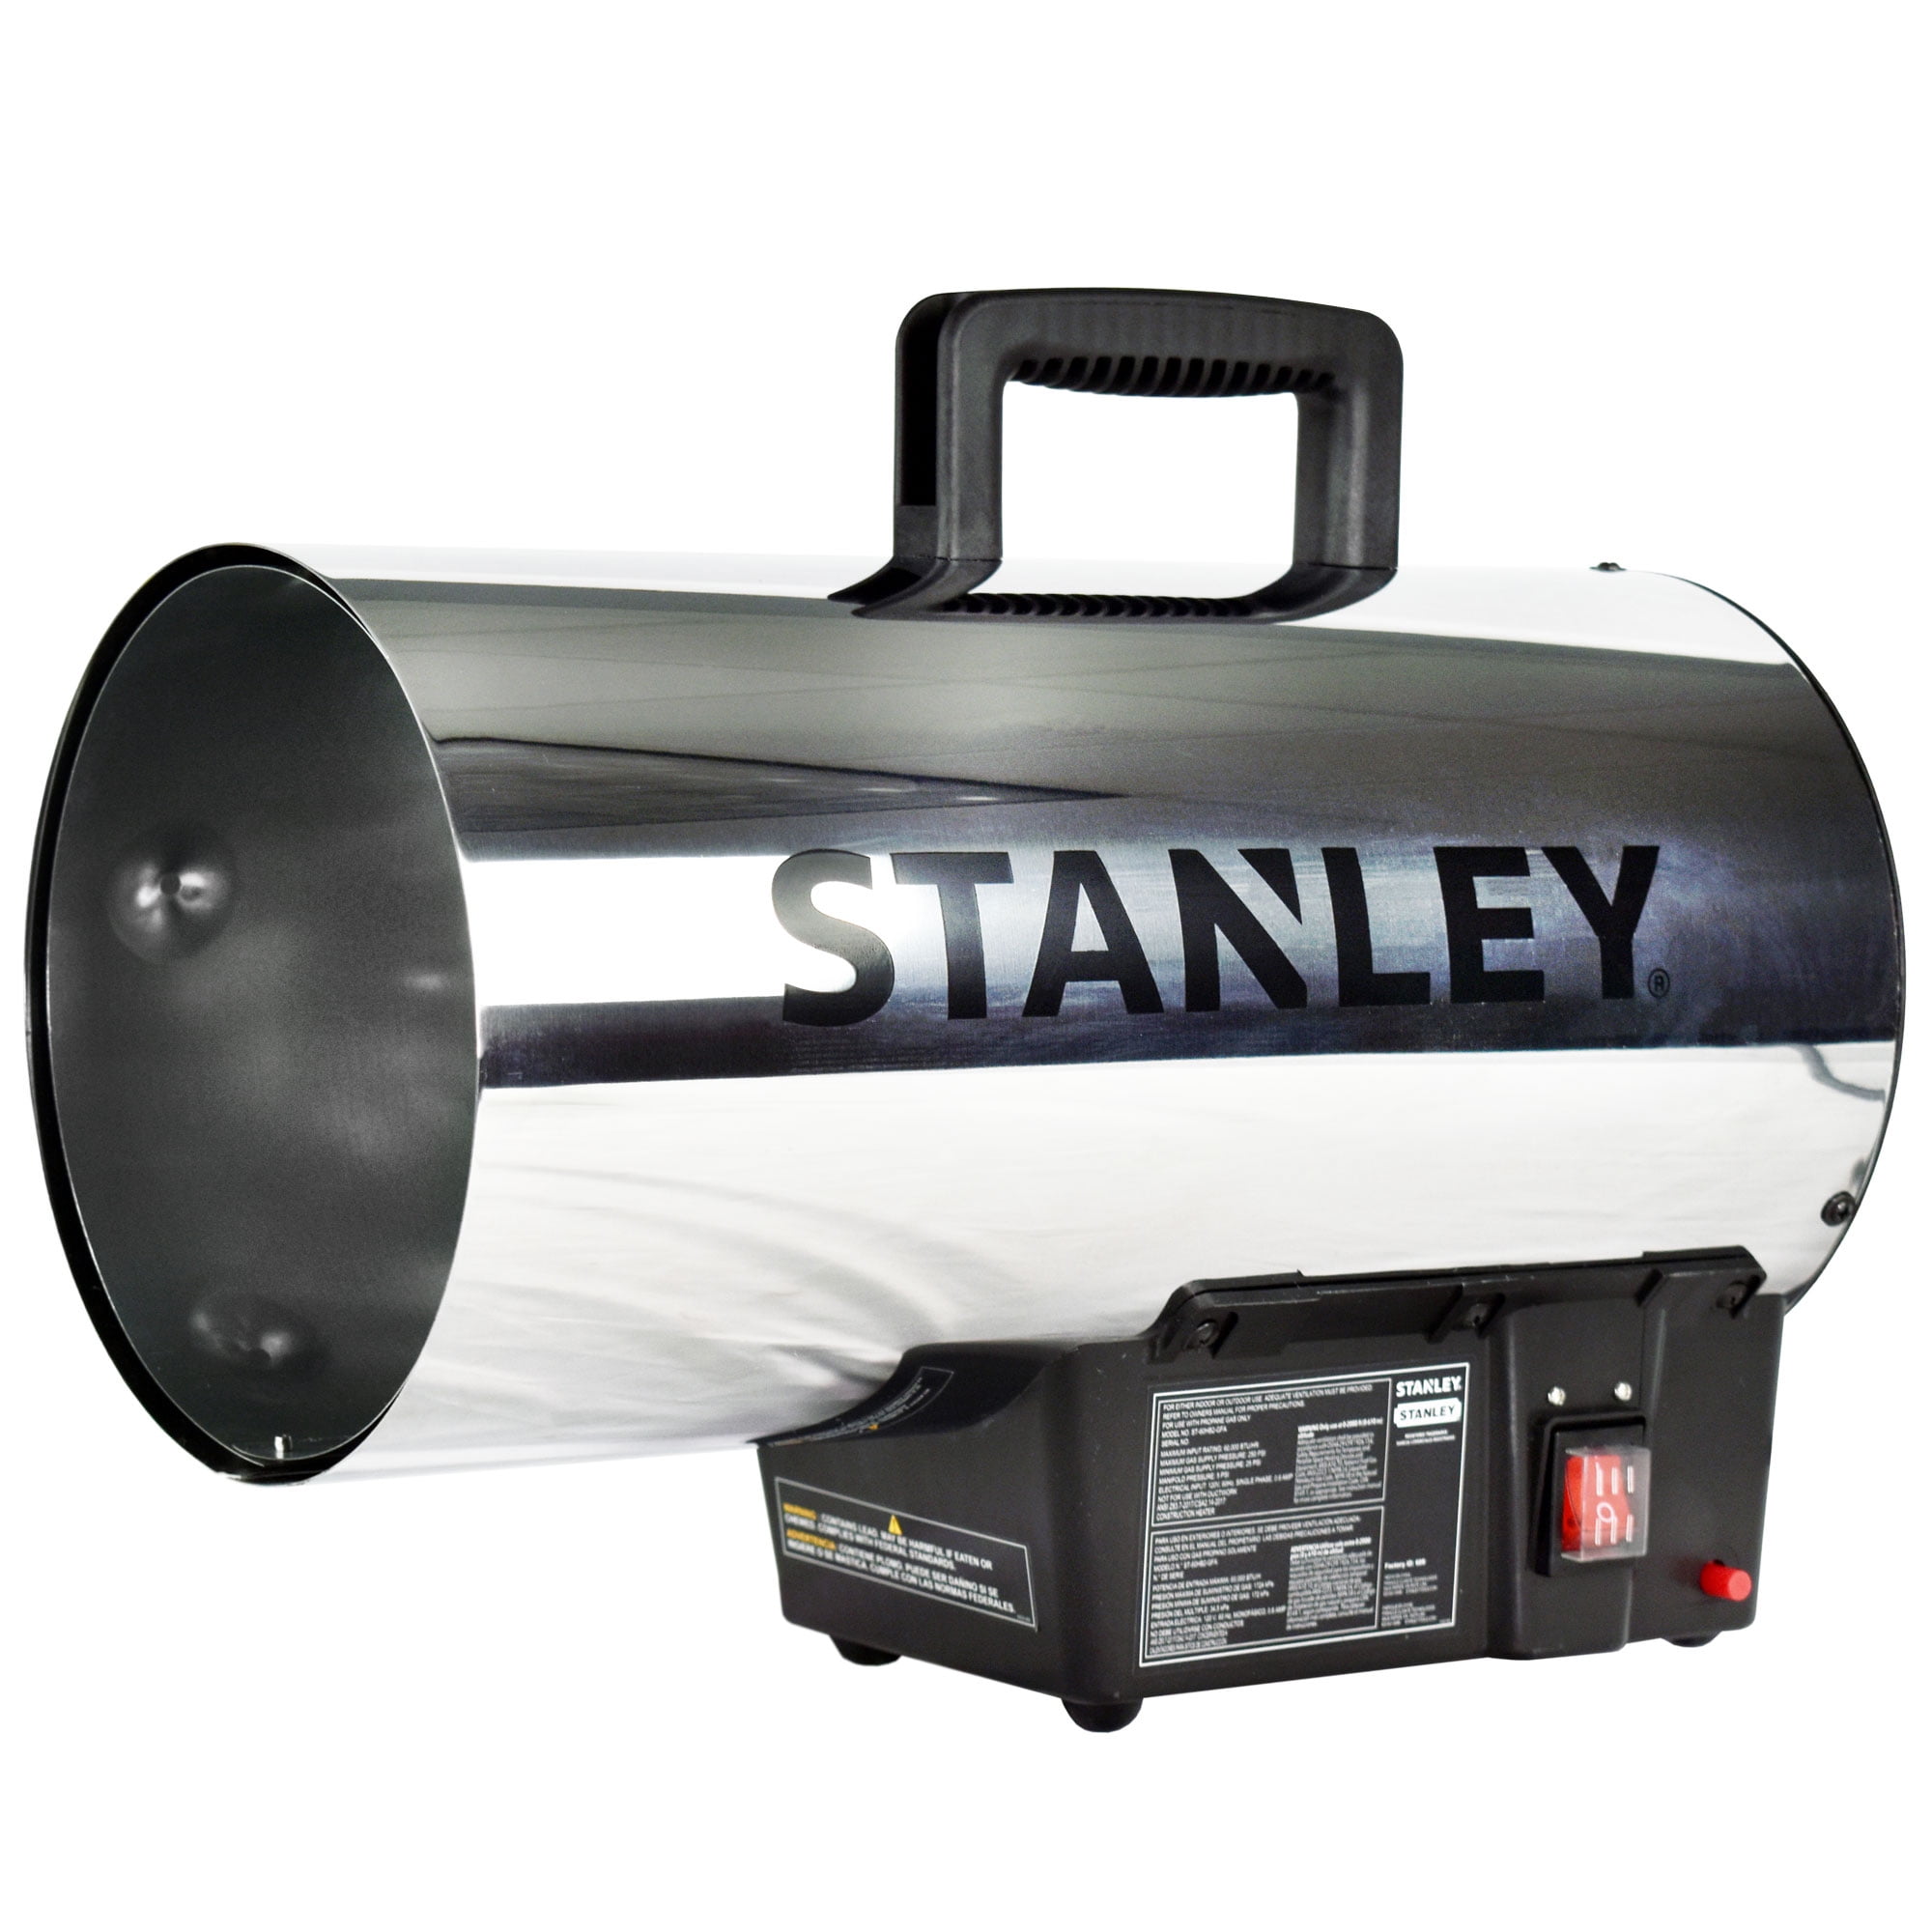 STANLEY Propane Gas Heater for Garage Heater, Shop Heater 60,000 BTU